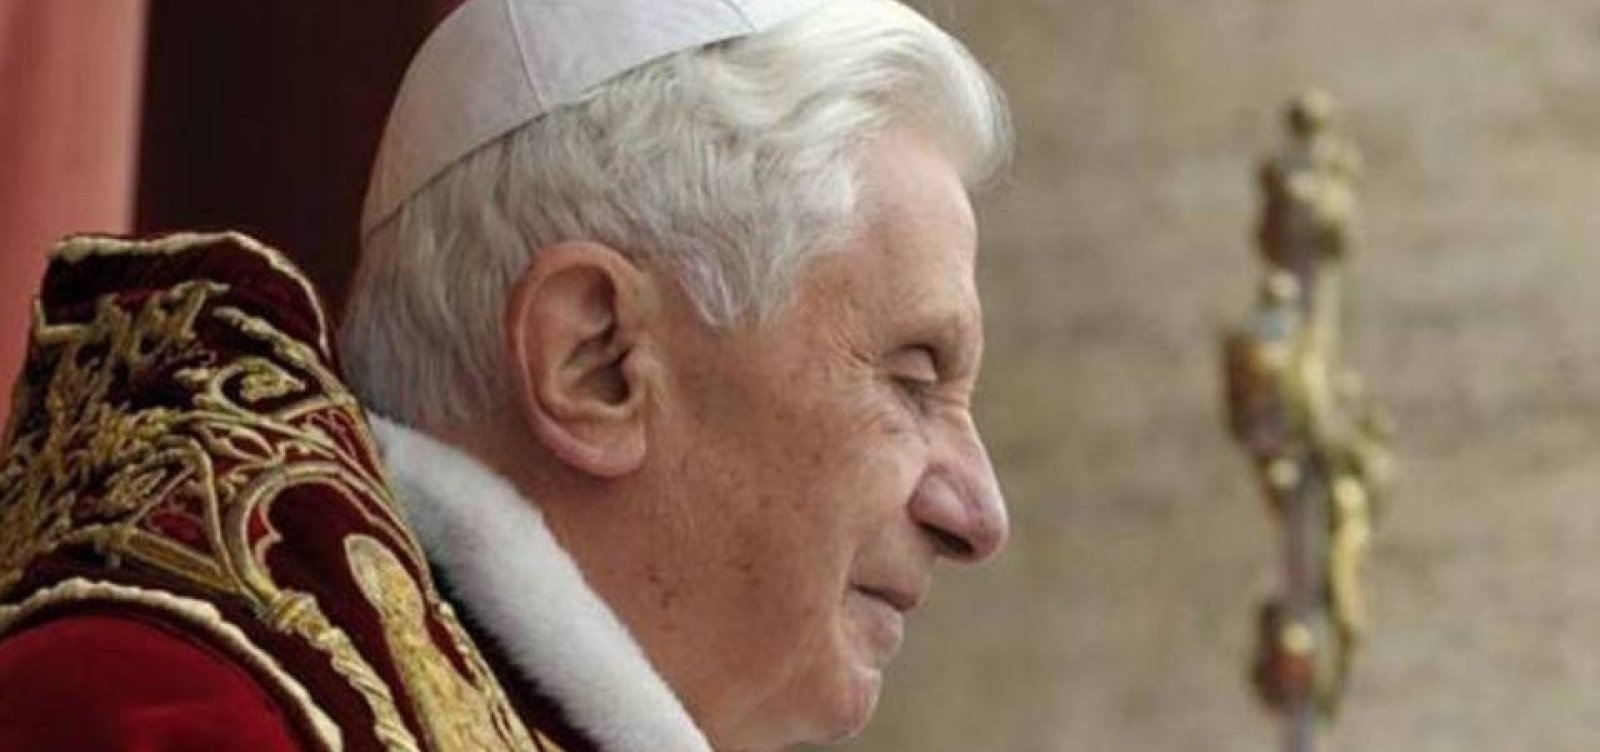 Saúde do papa emérito Bento XVI está ‘extremamente frágil’, diz artigo alemão